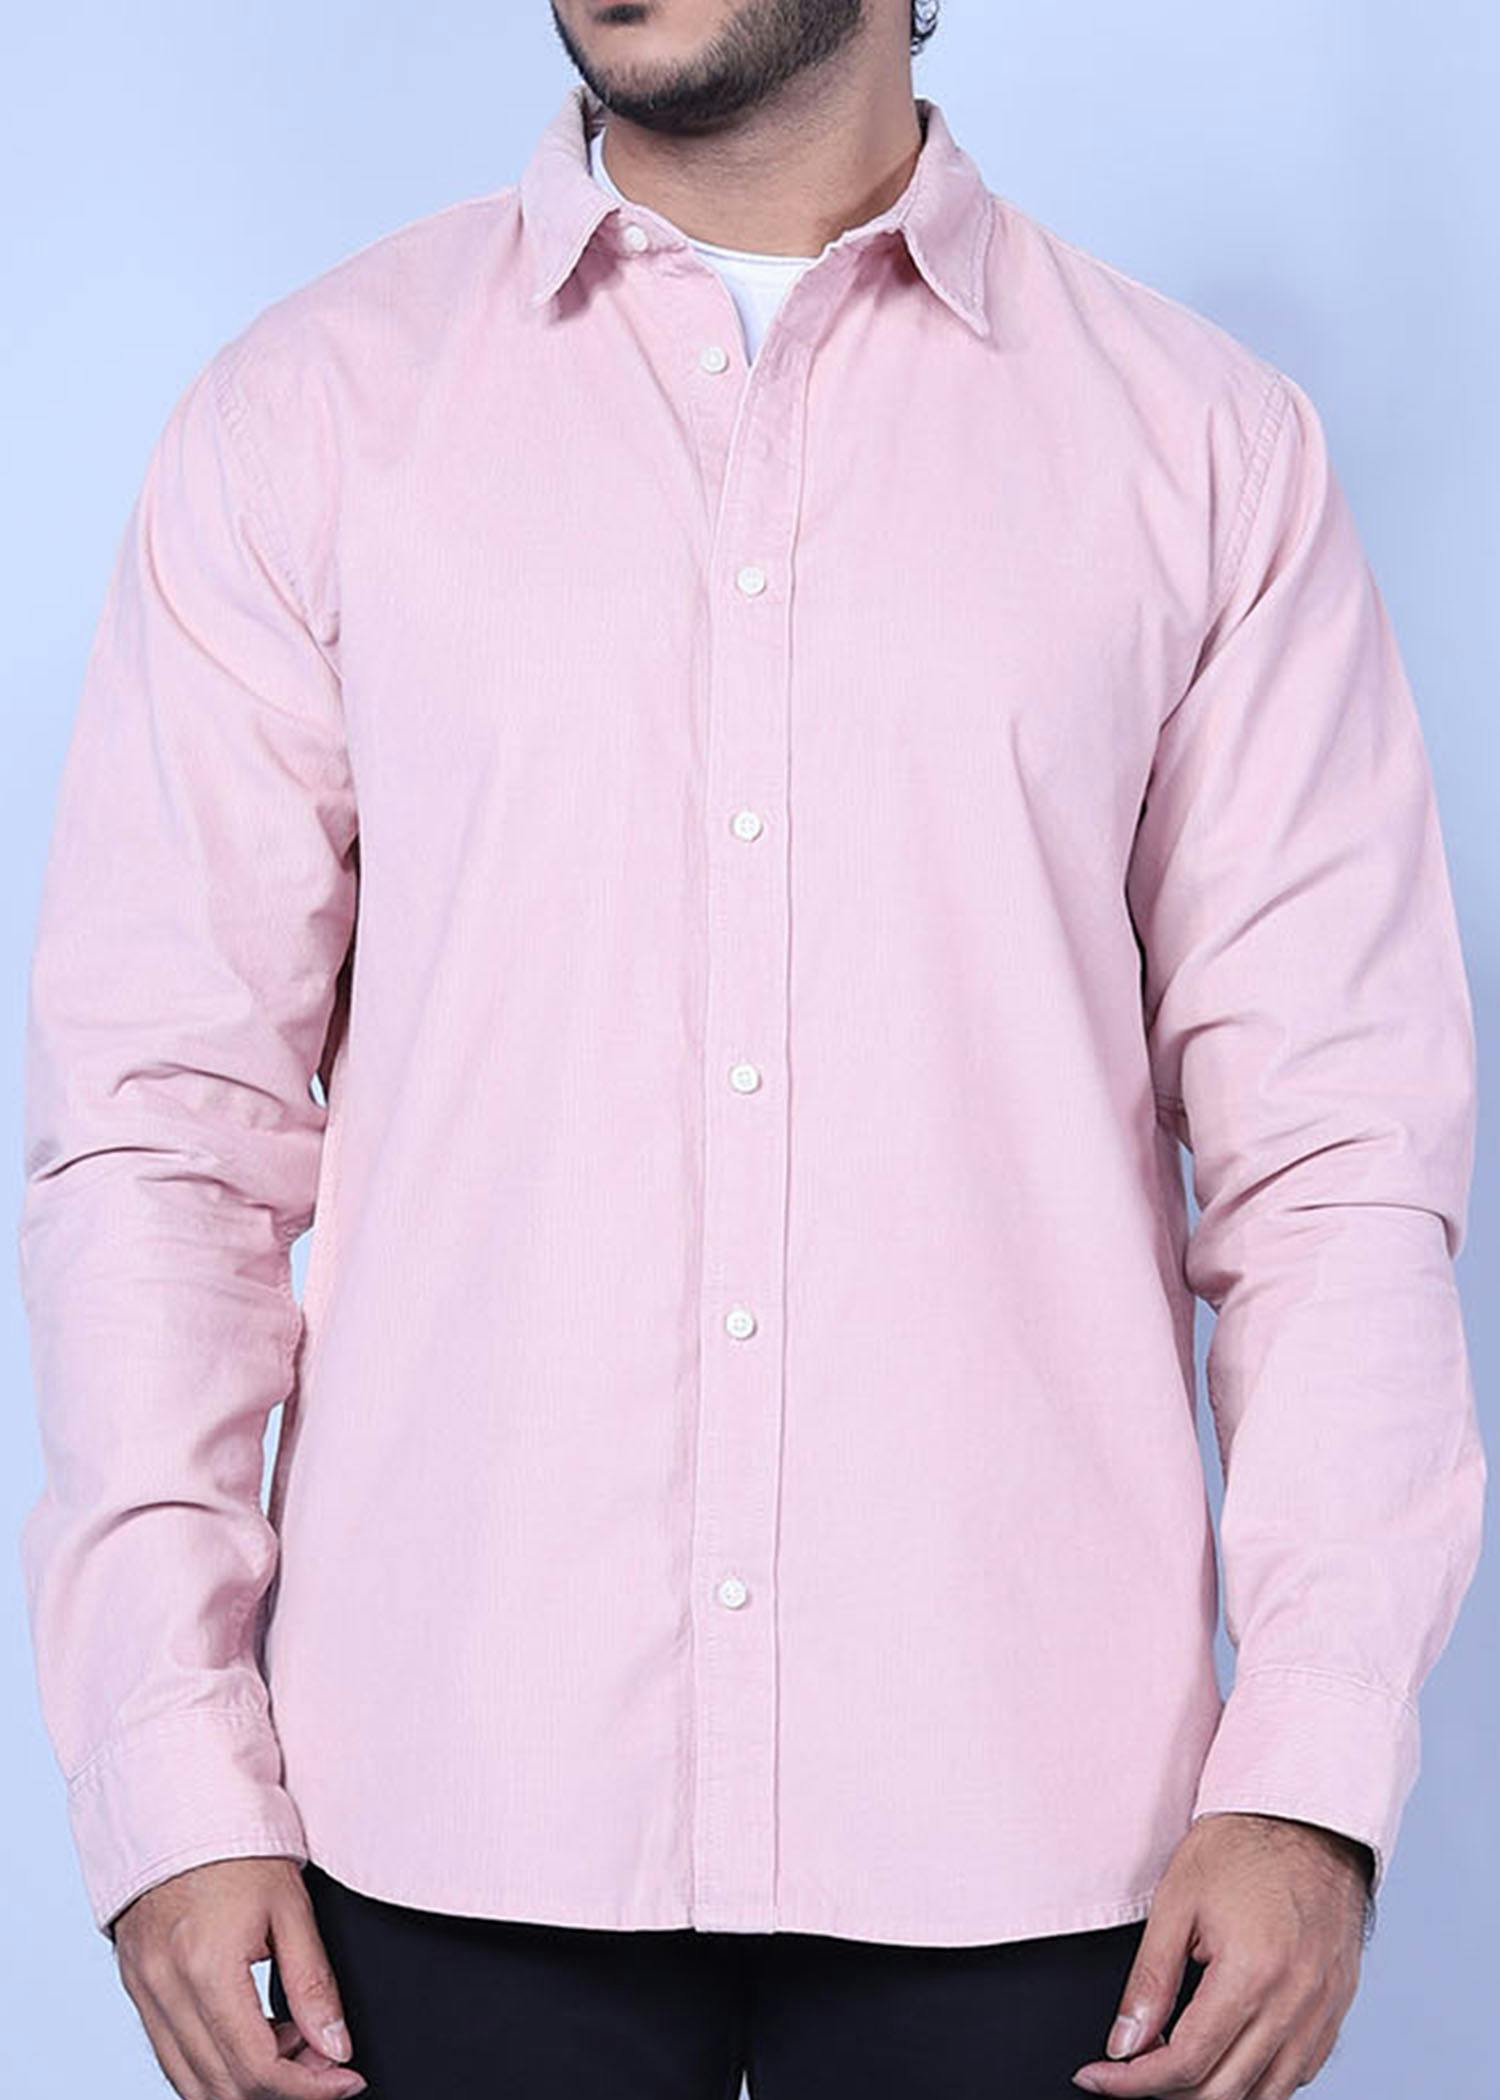 beijing i corduroy shirt lt pink color headcropped